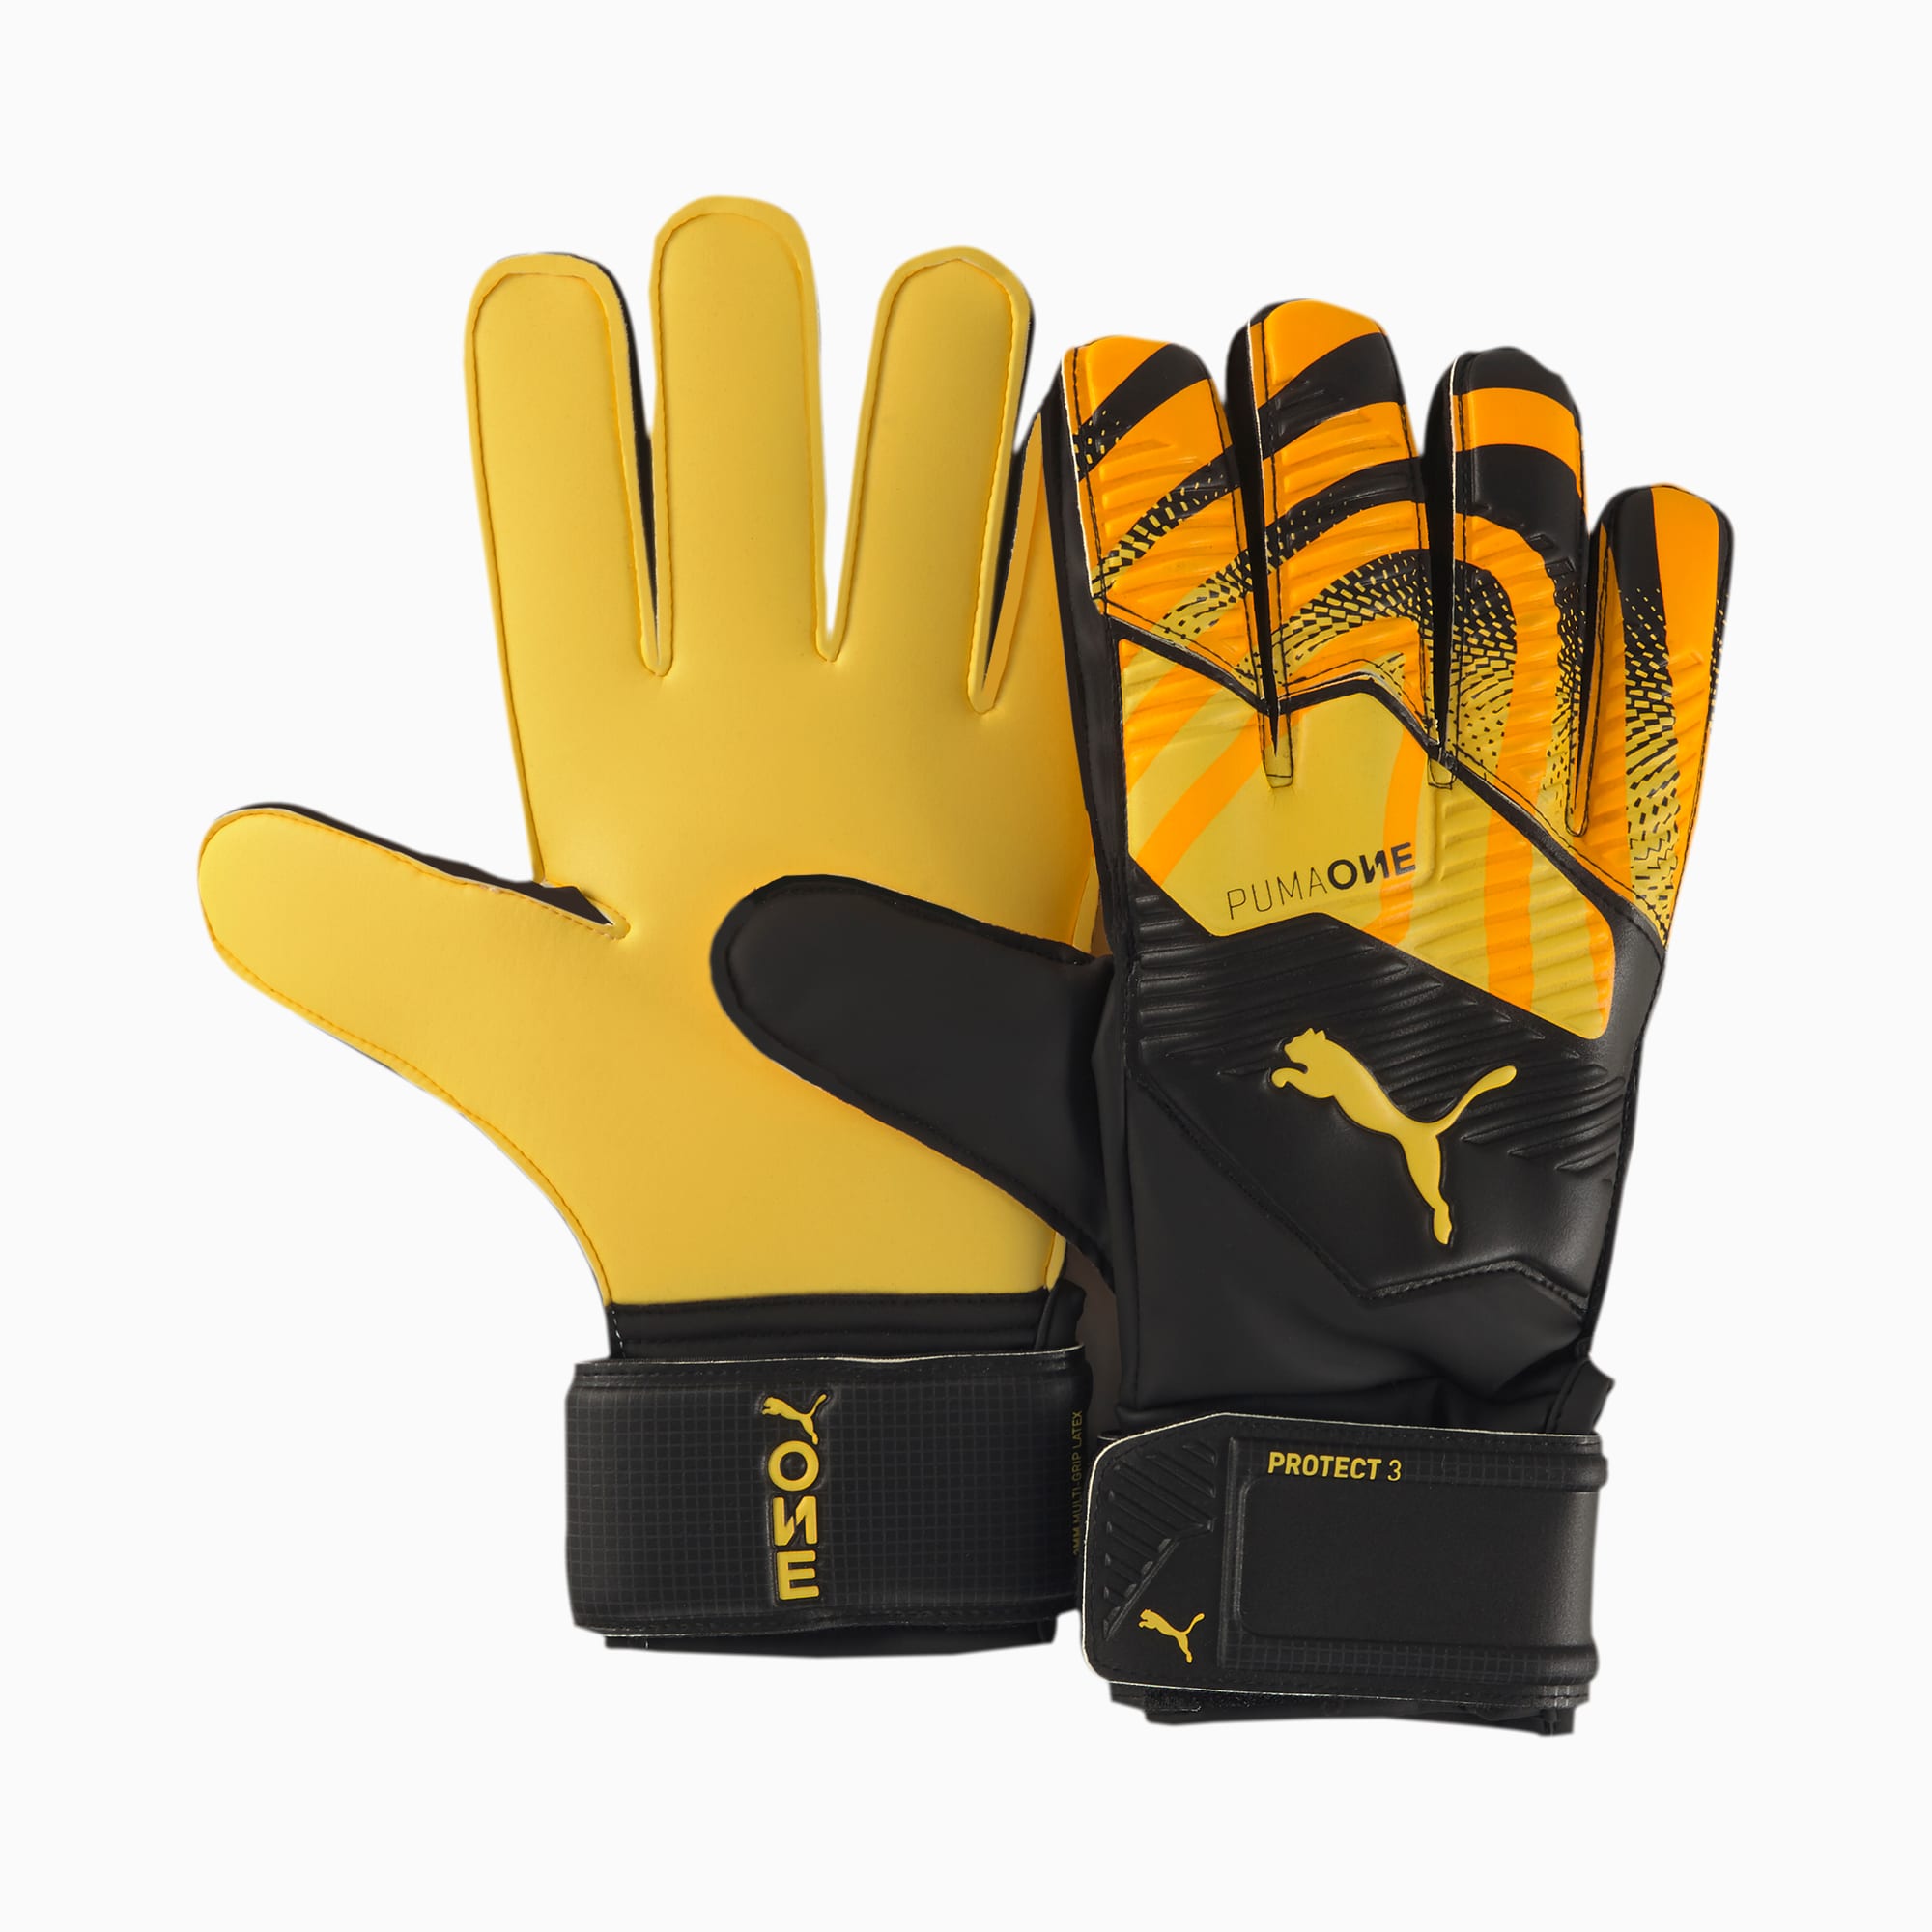 PUMA ONE Protect 3 Goalkeeper Gloves 